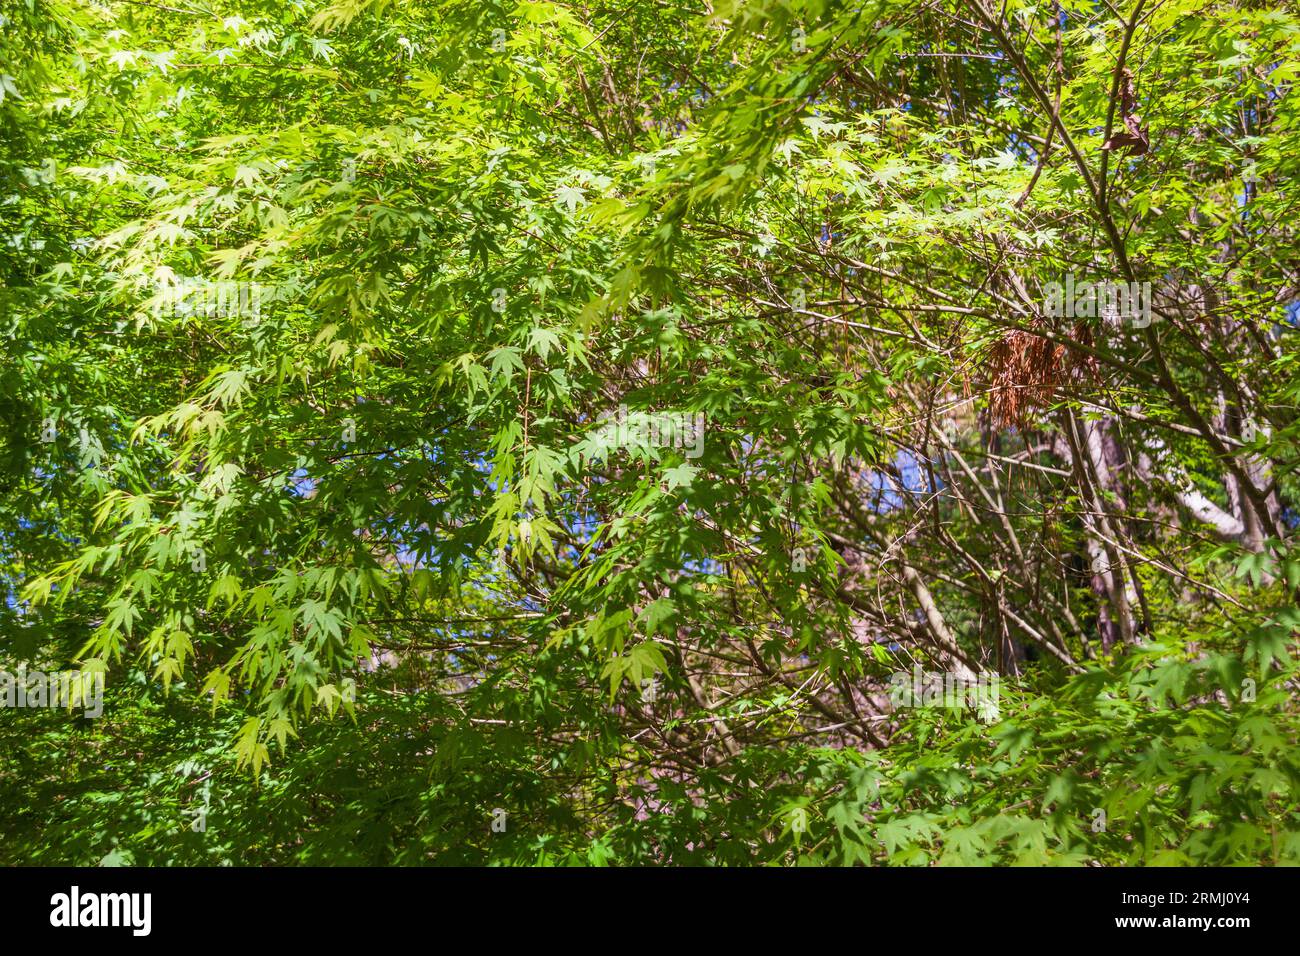 Luce che splende attraverso l'albero d'acero giapponese, Acer palmatum, presso i giardini Callaway a Pine Mountain, Georgia. Foto Stock